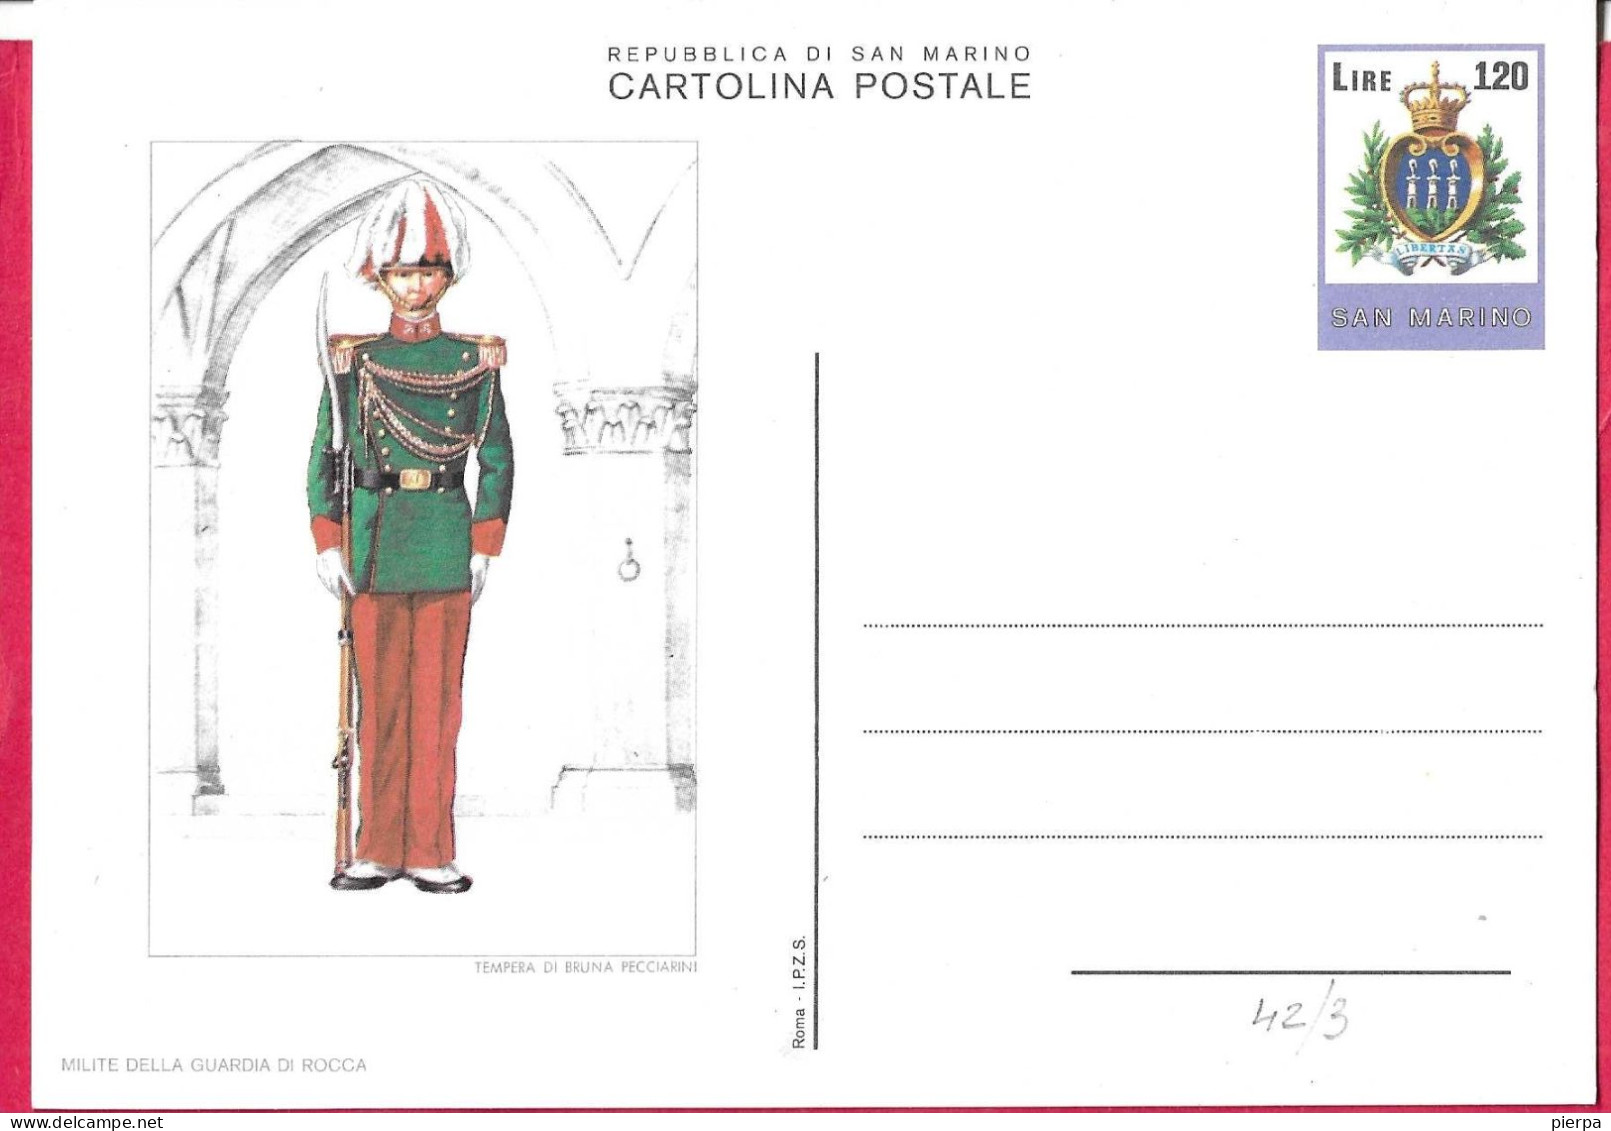 SAN MARINO - INTERO CARTOLINA POSTALE UNIFORMI (MILITE DELLA GUARDIA DI ROCCA) LIRE 120 (CAT. INT 42/3) - NUOVO - Enteros Postales